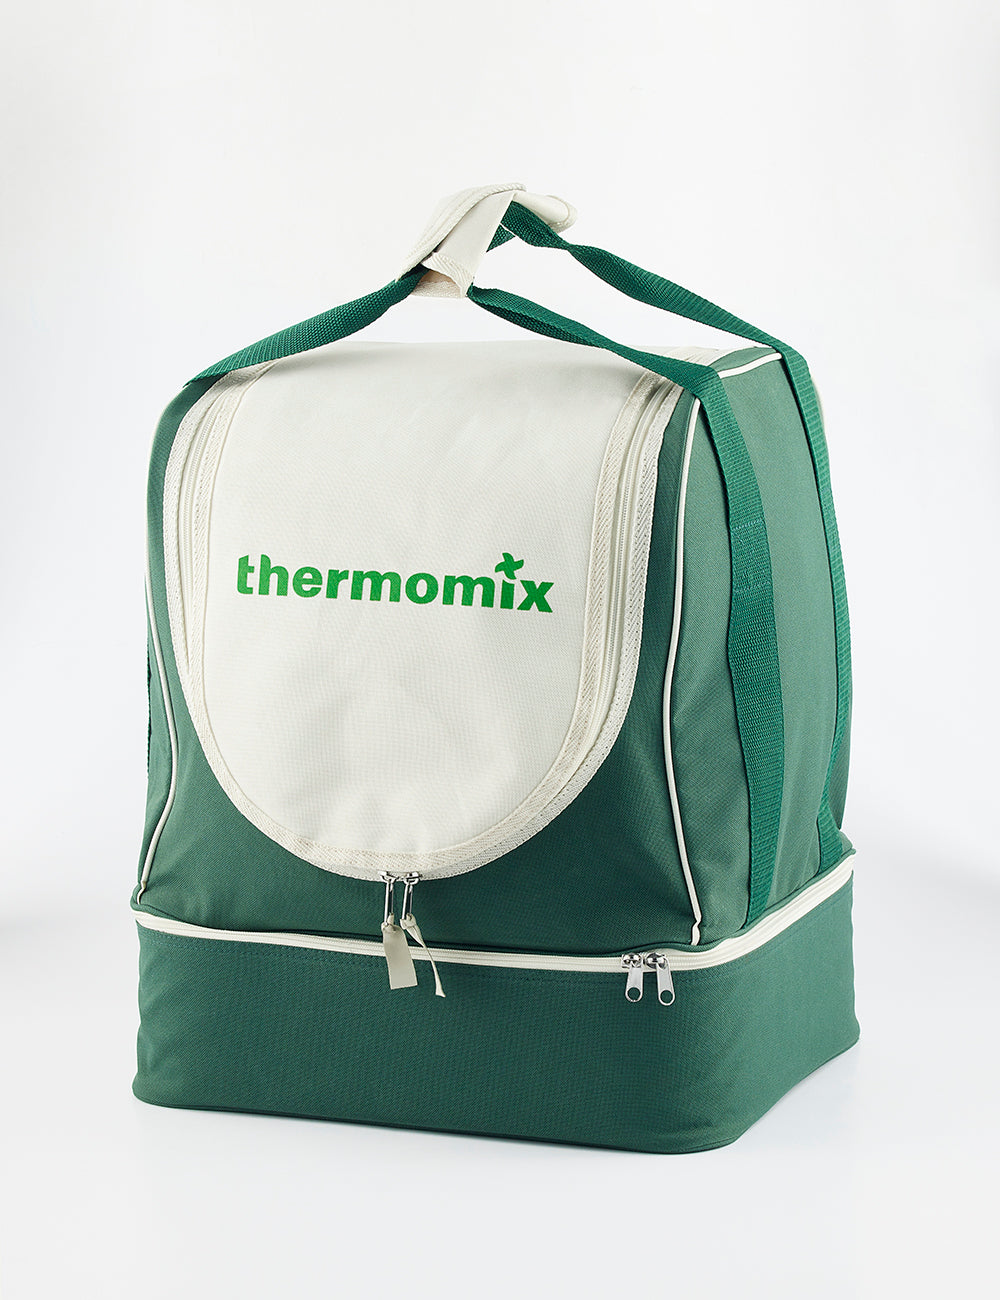 Sac de transport Thermomix® - Edition limitée 140 ans - Achat en